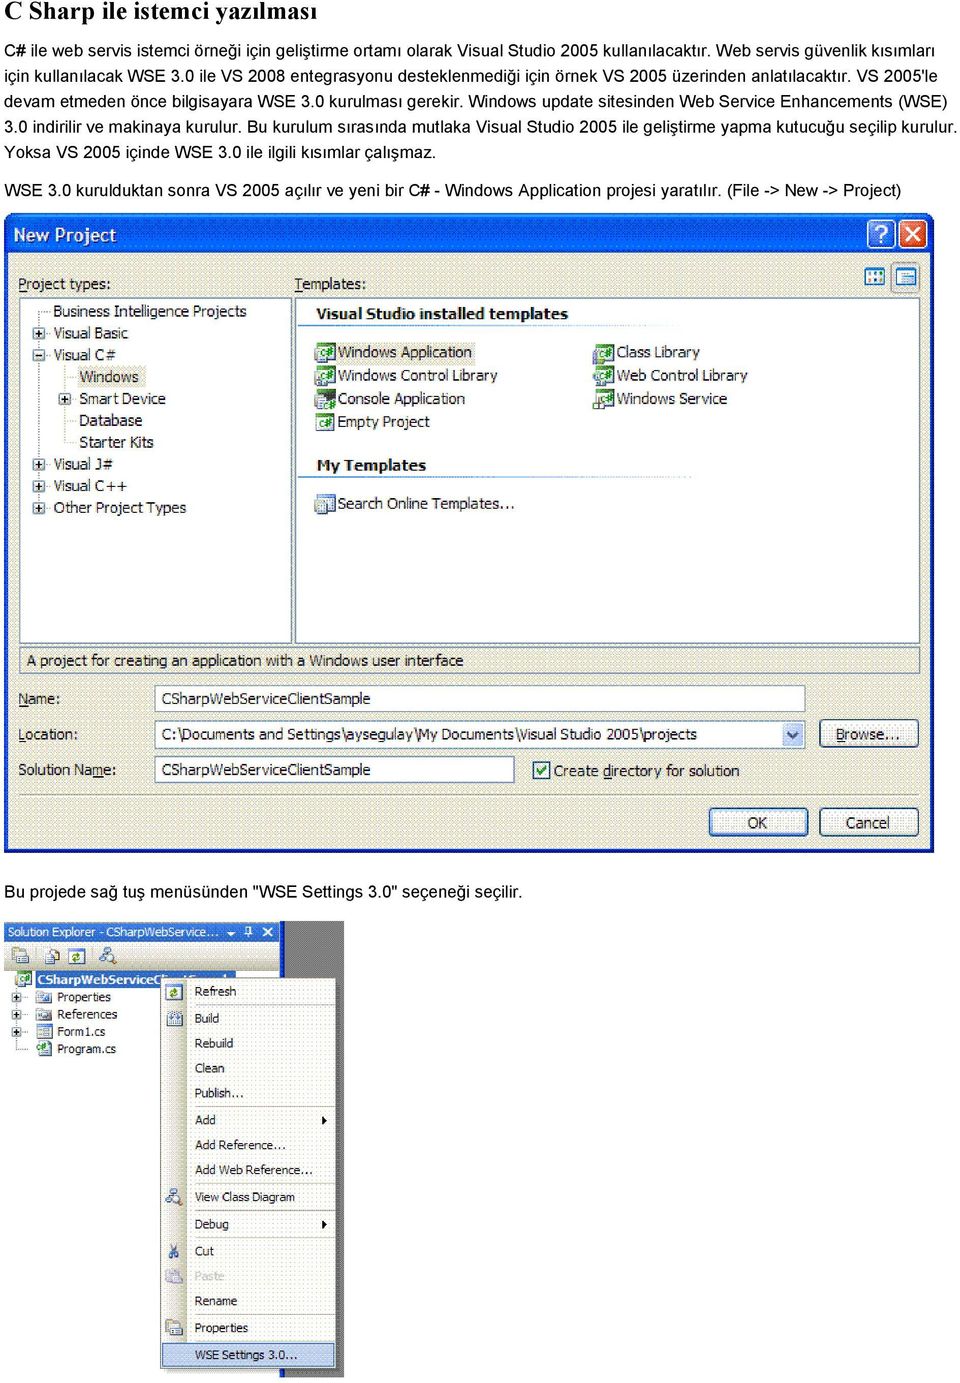 Windows update sitesinden Web Service Enhancements (WSE) 3.0 indirilir ve makinaya kurulur. Bu kurulum sırasında mutlaka Visual Studio 2005 ile geliştirme yapma kutucuğu seçilip kurulur.